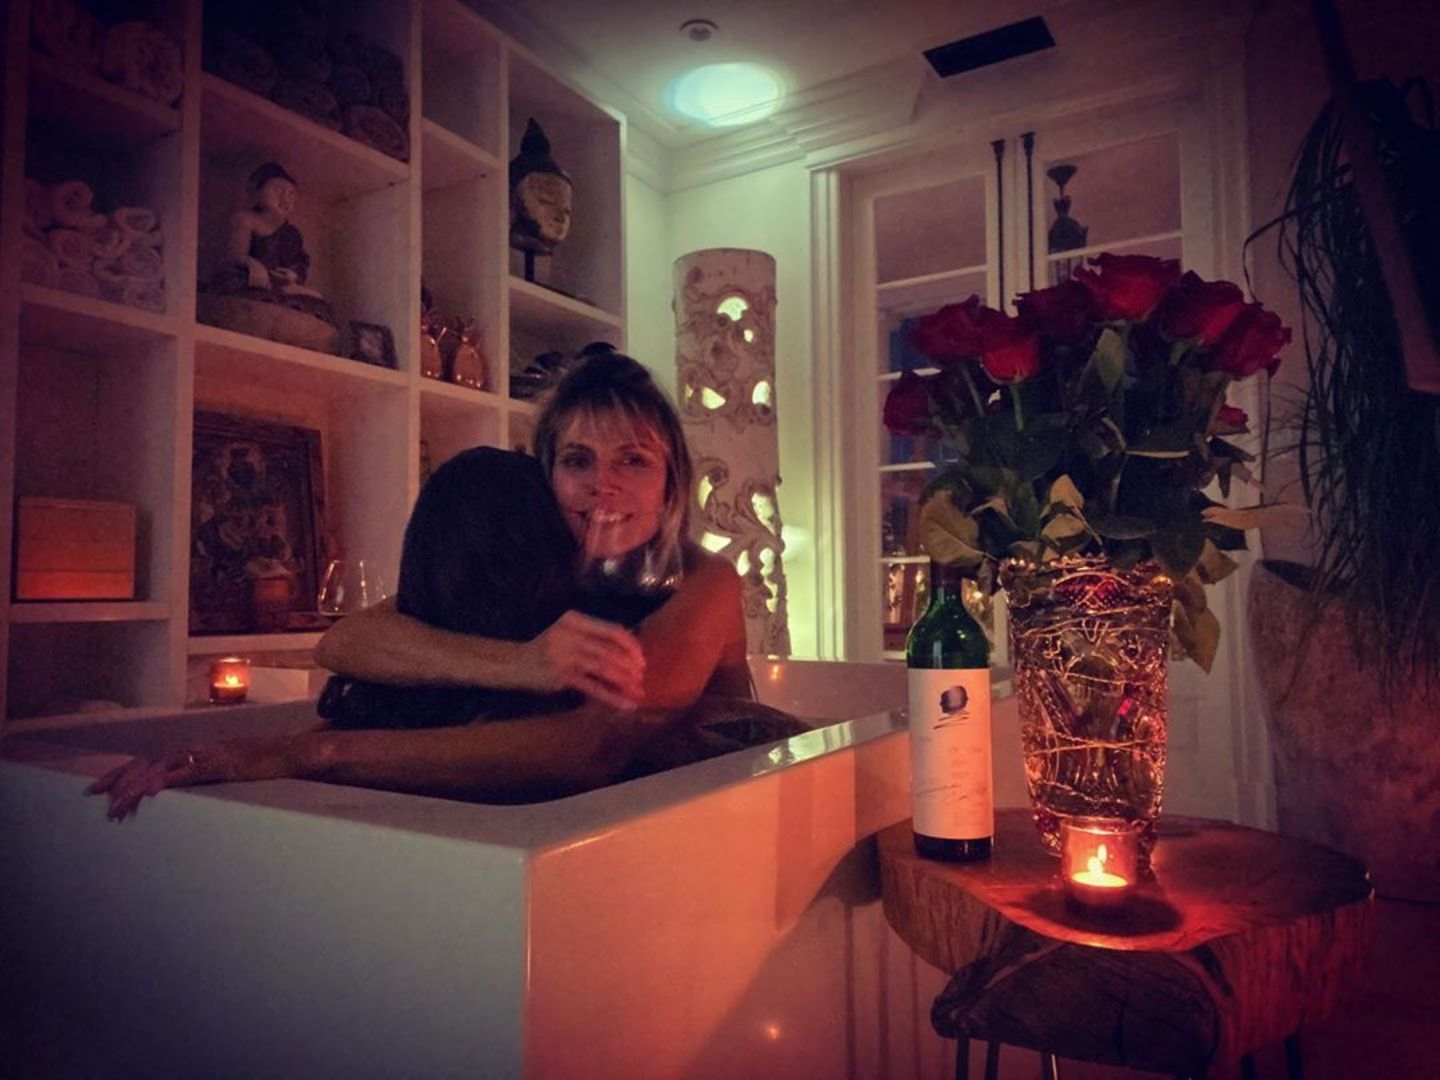 29. September 2020  Heidi Klum gönnt sich ein entspannendes Bad in der Wanne ... Doch Moment, was auf den ersten Blick nach einer gemütlichen Auszeit für Heidi aussieht, entpuppt sich als ganz schön intimer Moment mit Mann Tom Kaulitz. Denn das Model umarmt hier bei einem Glas Wein und romantischem Kerzenlicht ihren Liebsten. Bleibt die Frage offen, wer diesen intimen Moment eingefangen hat. 